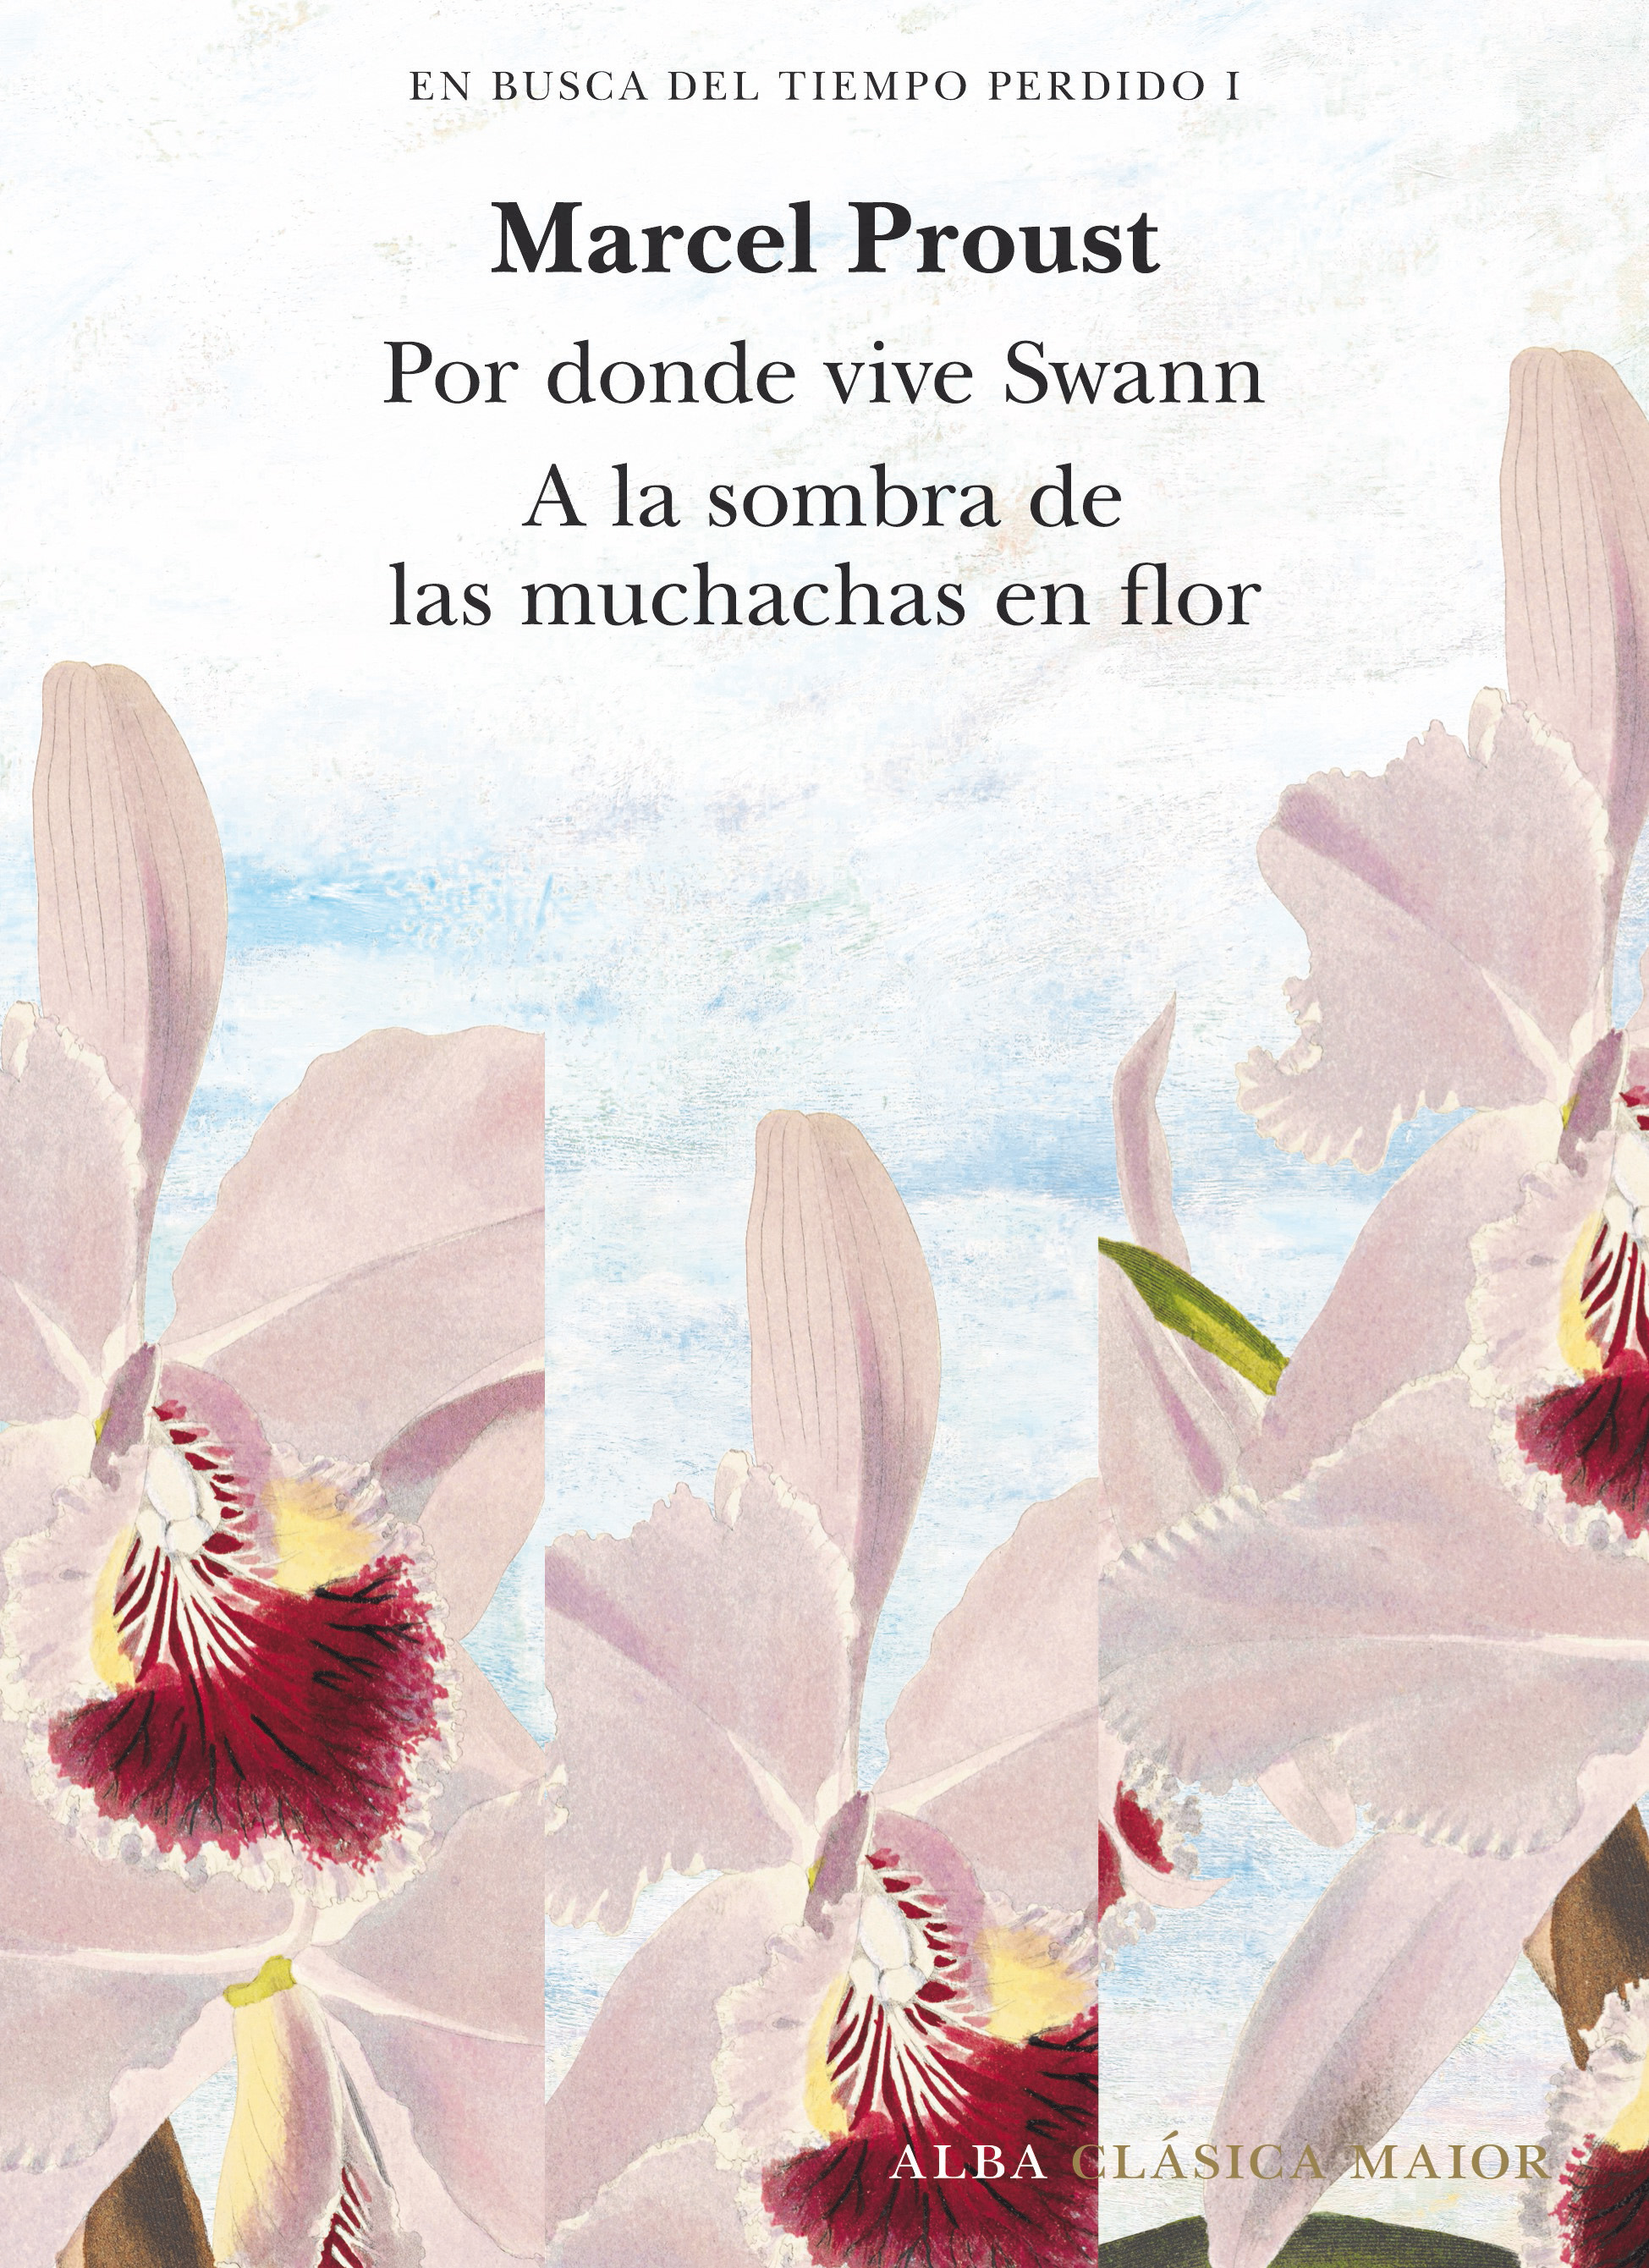 En busca del tiempo perdido, vol. 1   «Por donde vive Swan (Tomo I) y A la sombra de las muchachas en flor (Tomo II)» (9788490659229)